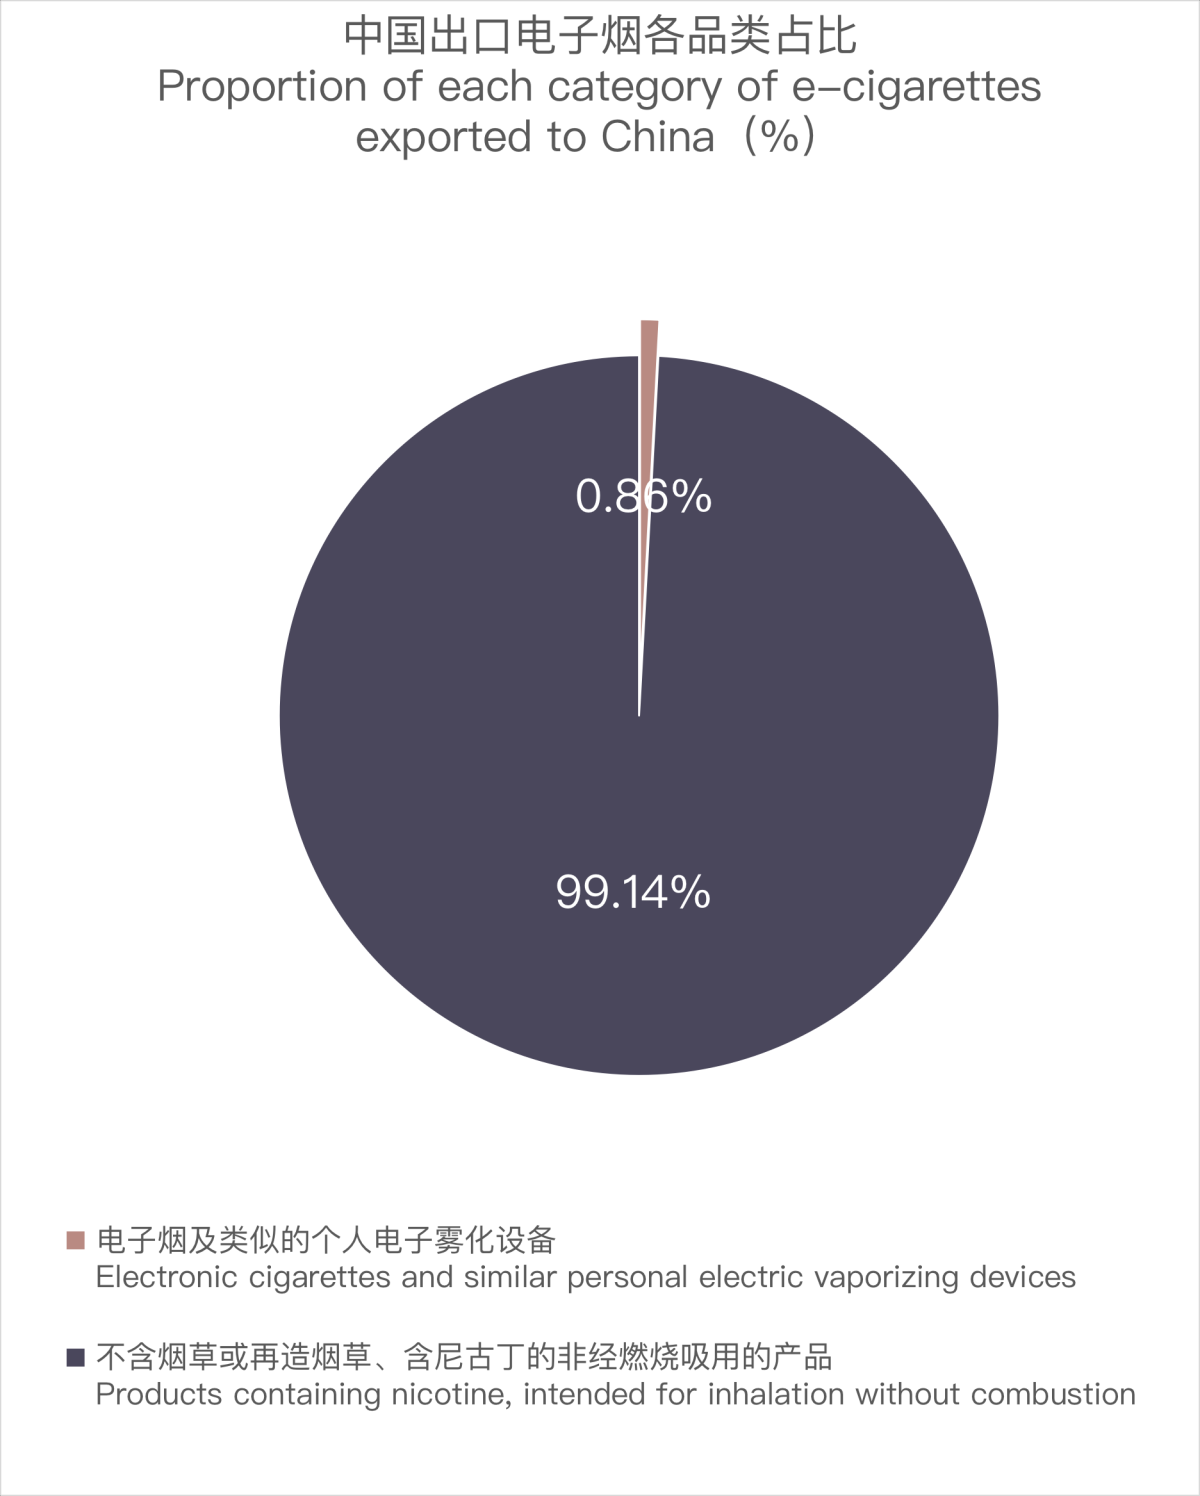 9月中国出口比利时电子烟约826万美元 环比下降约24%